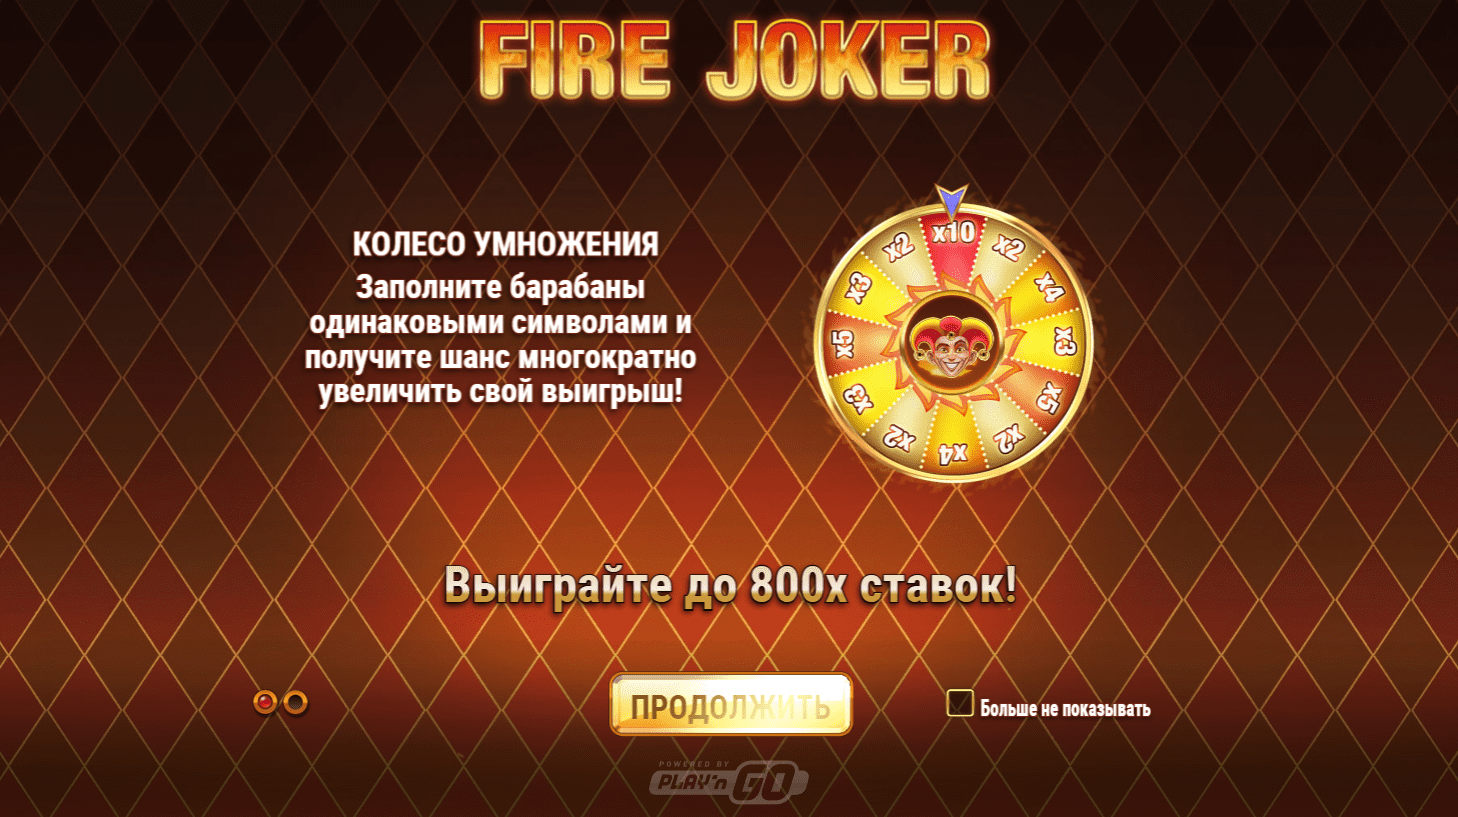 Fire joker símbolos básicos